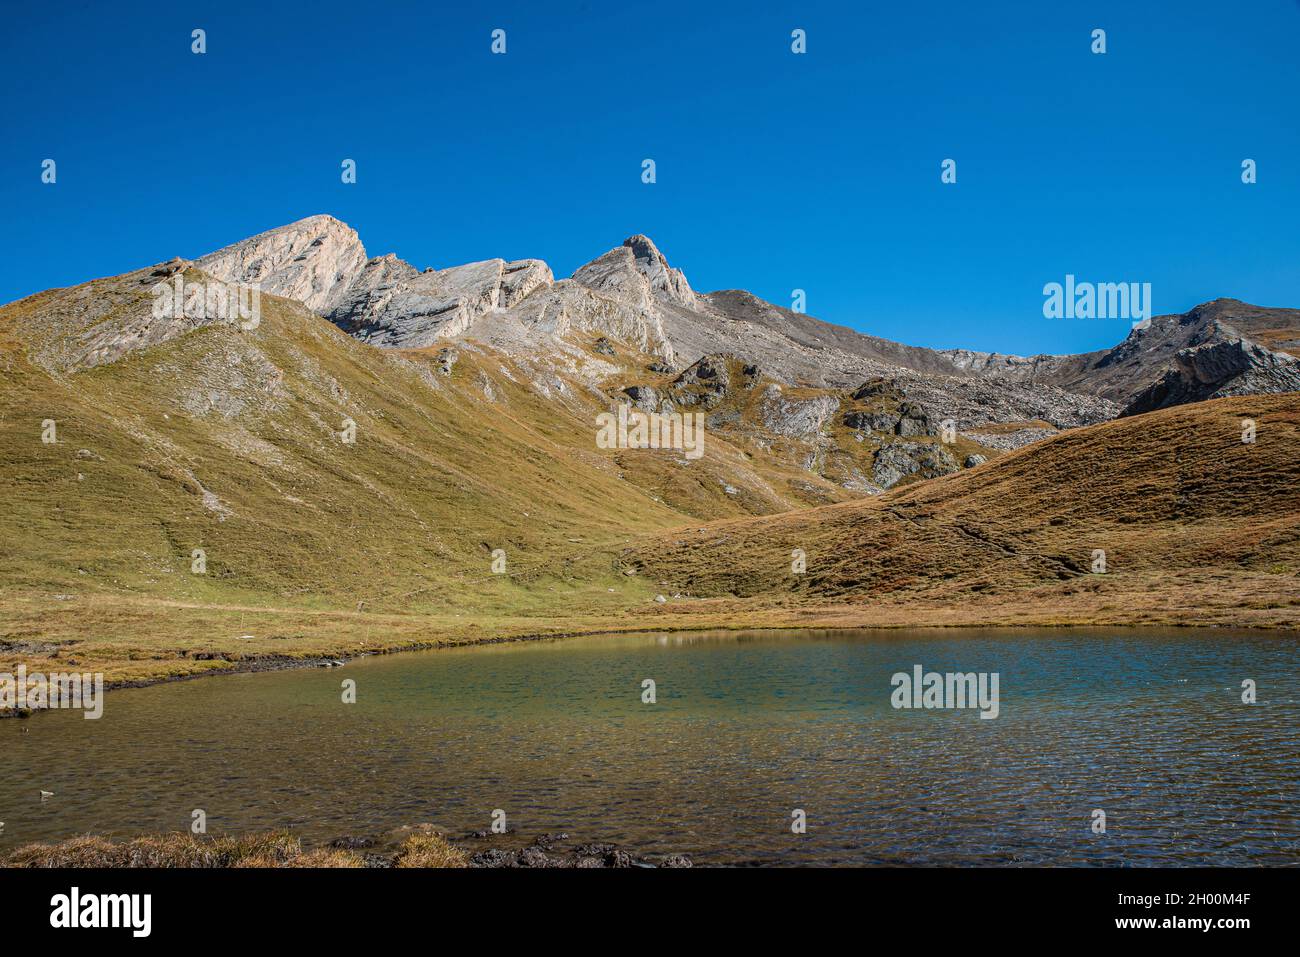 Colle dell'Agnello a circa 2800 metri sul livello del mare, al confine tra  la provincia di Cuneo e la Francia. Laghi alpini e picchi enormi, sui quali  Foto stock - Alamy